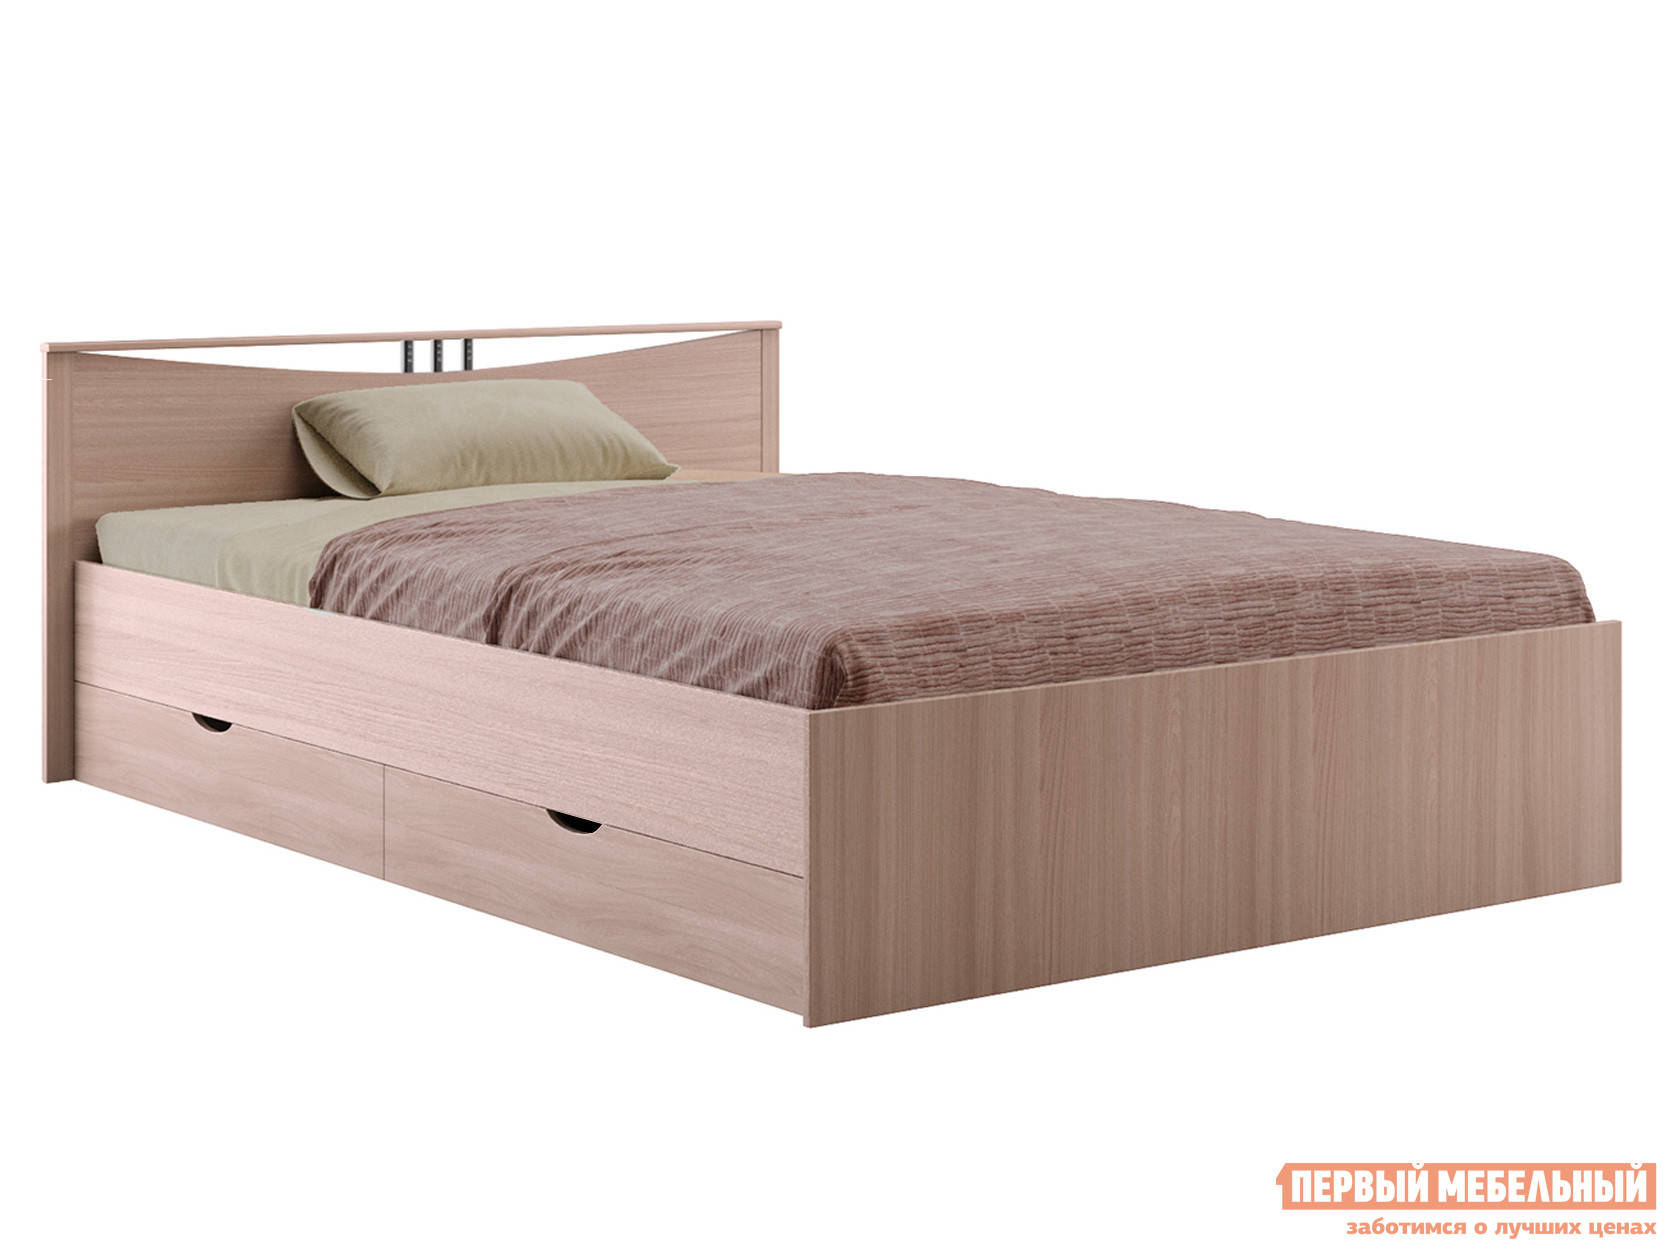 Двуспальная кровать  Кровать Мелисса Шимо светлый, 160х200 см